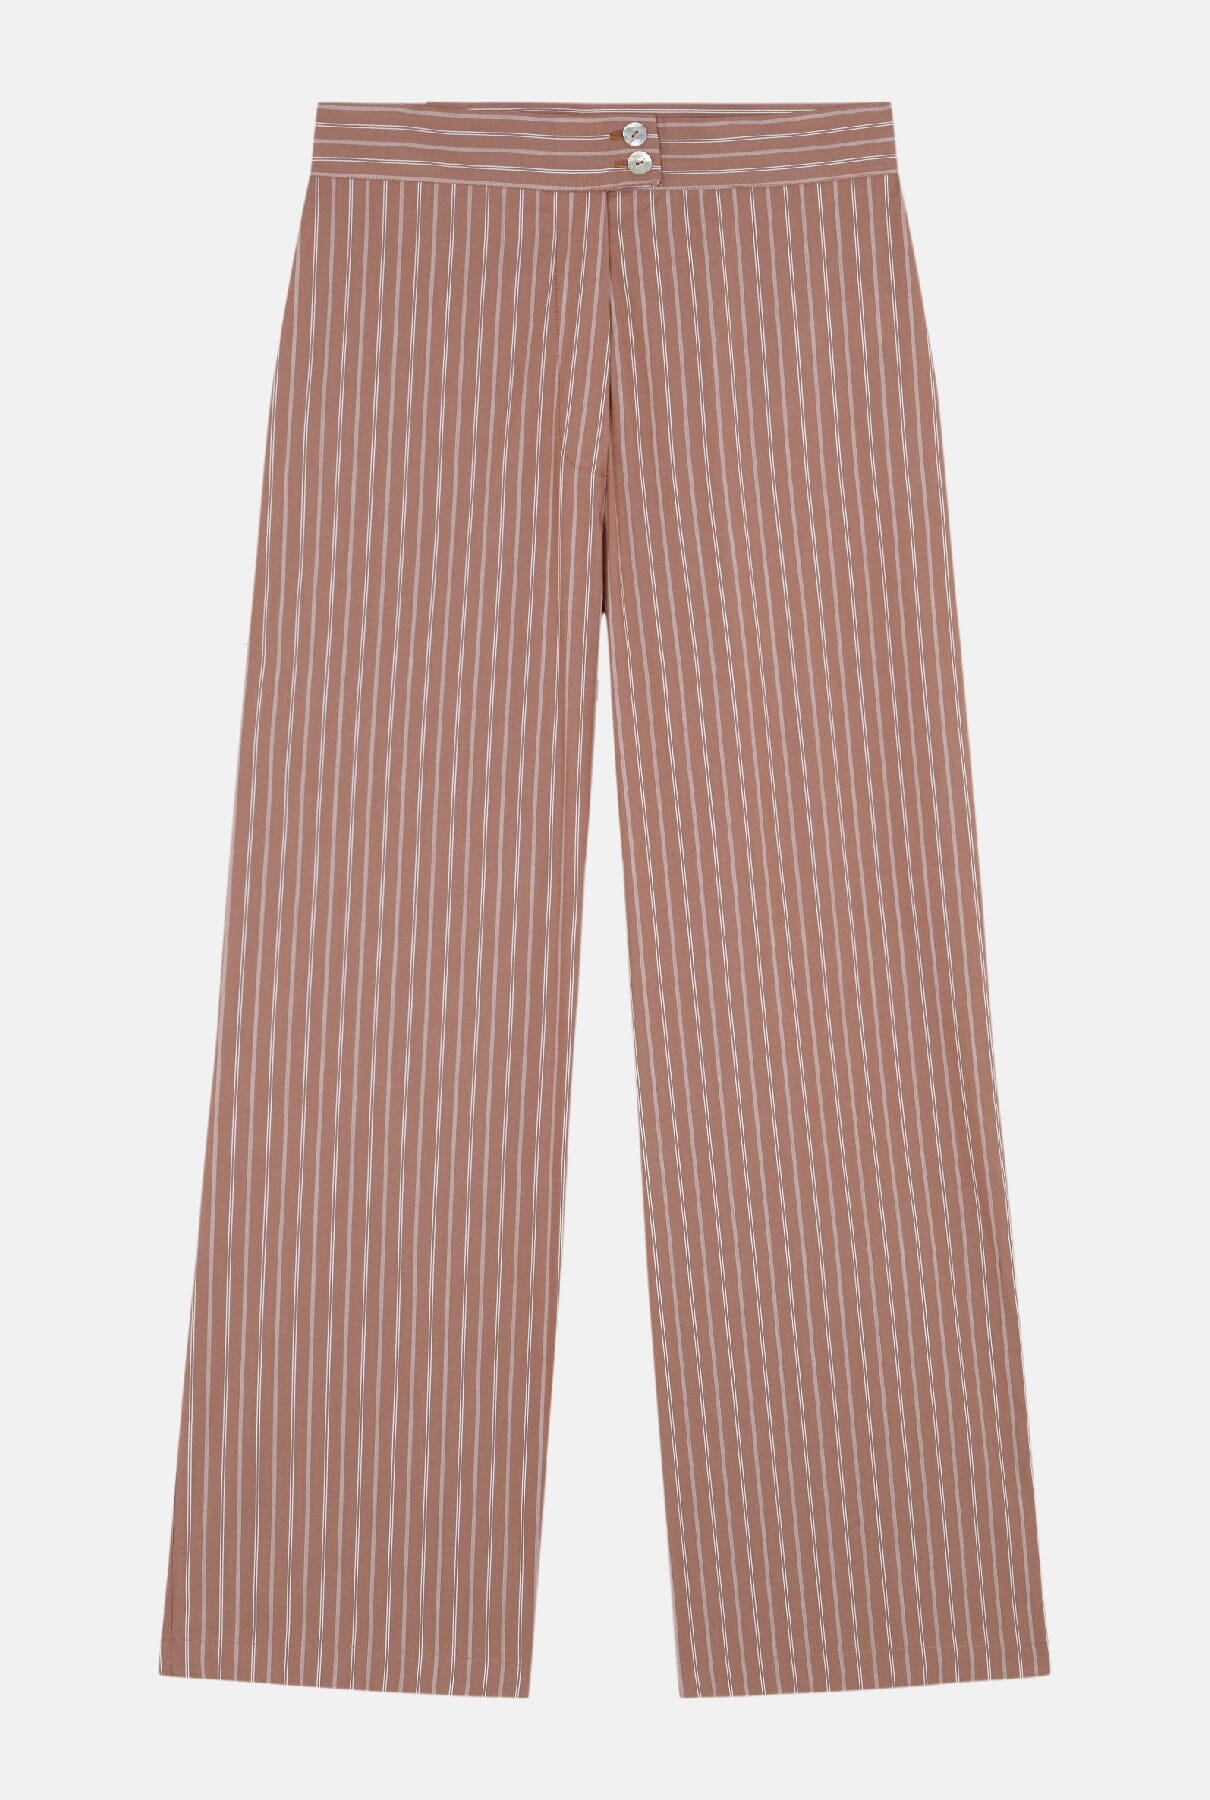 Luzia Pants Stripes Trousers Culto 1105 